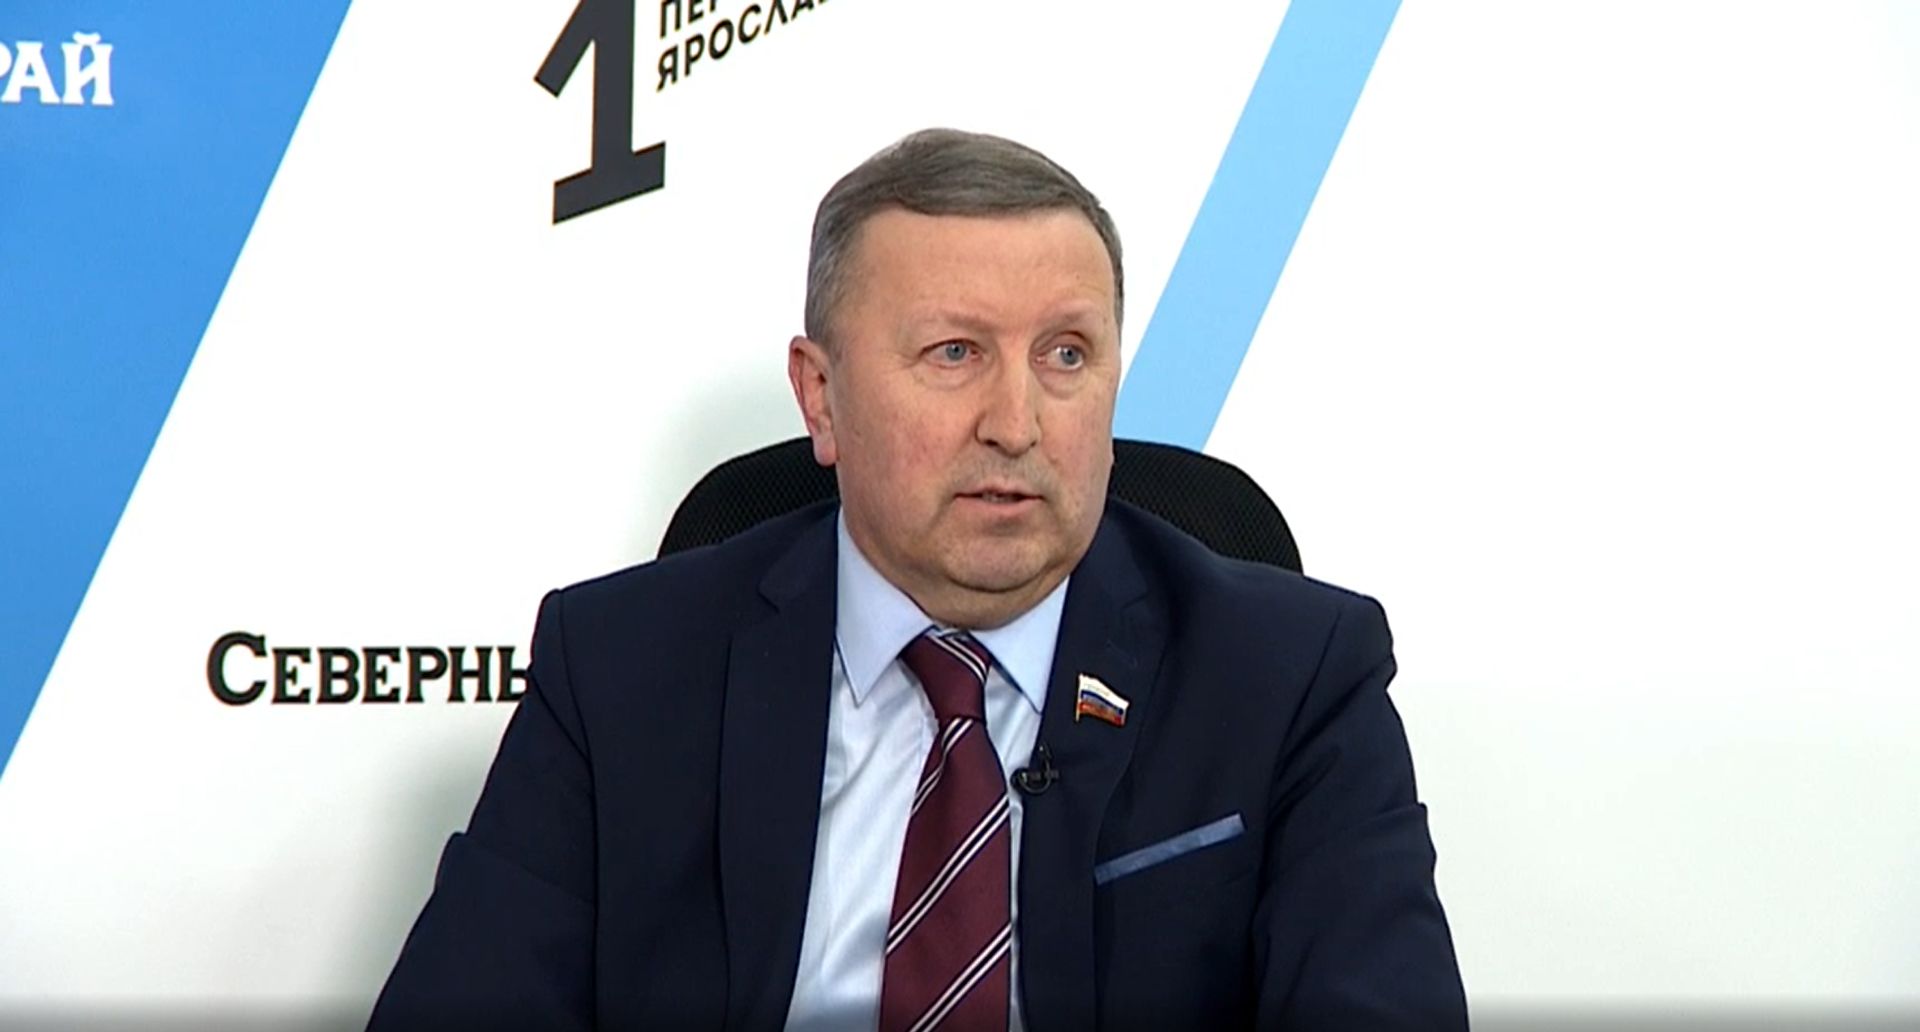 Сергей Березкин: Предприятия, принадлежащие иностранному капиталу, продолжают работу на территории Ярославской области